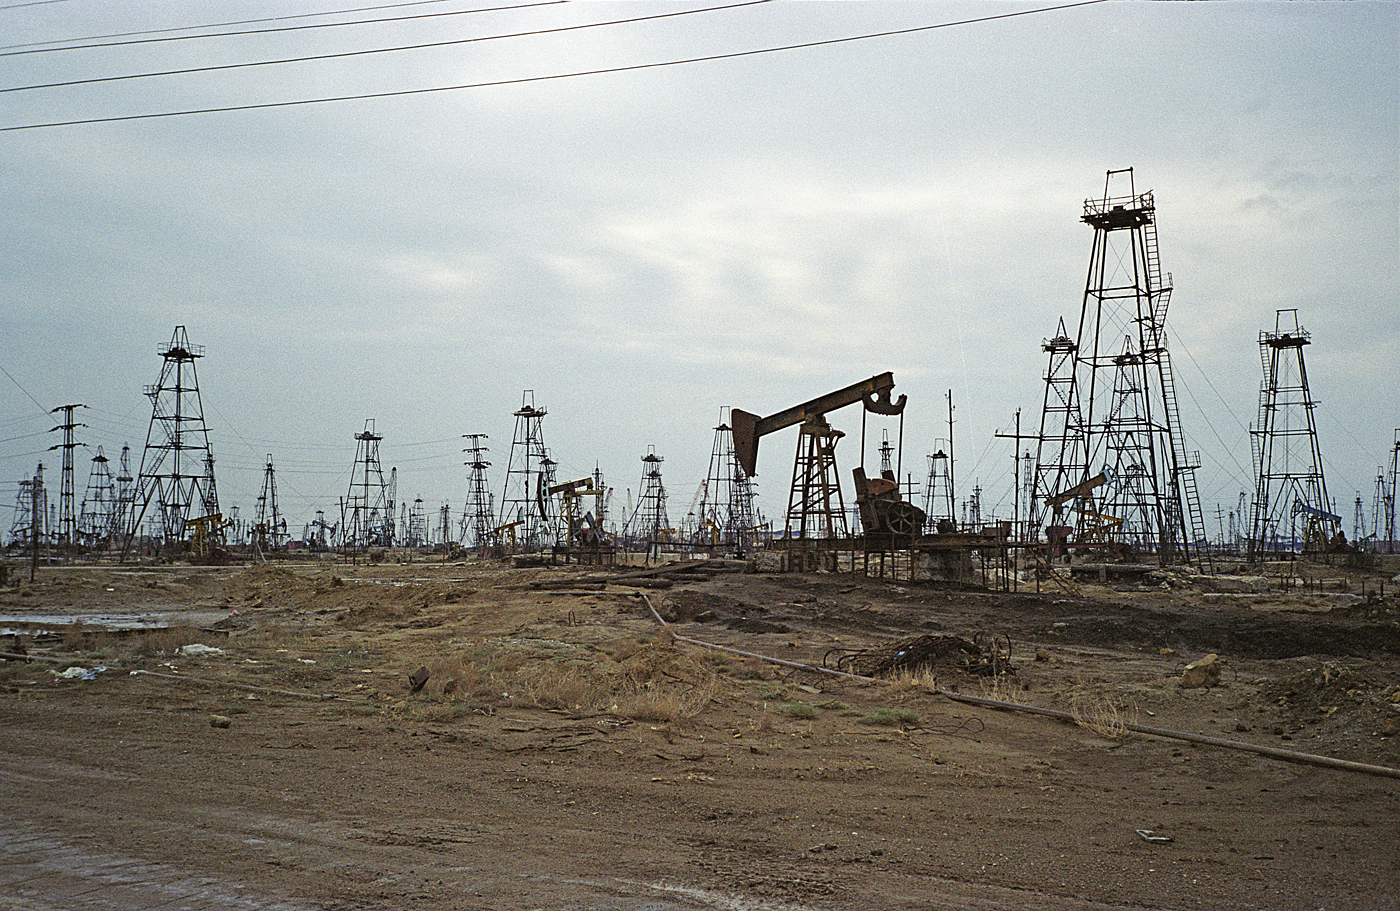 Caspian Oil field